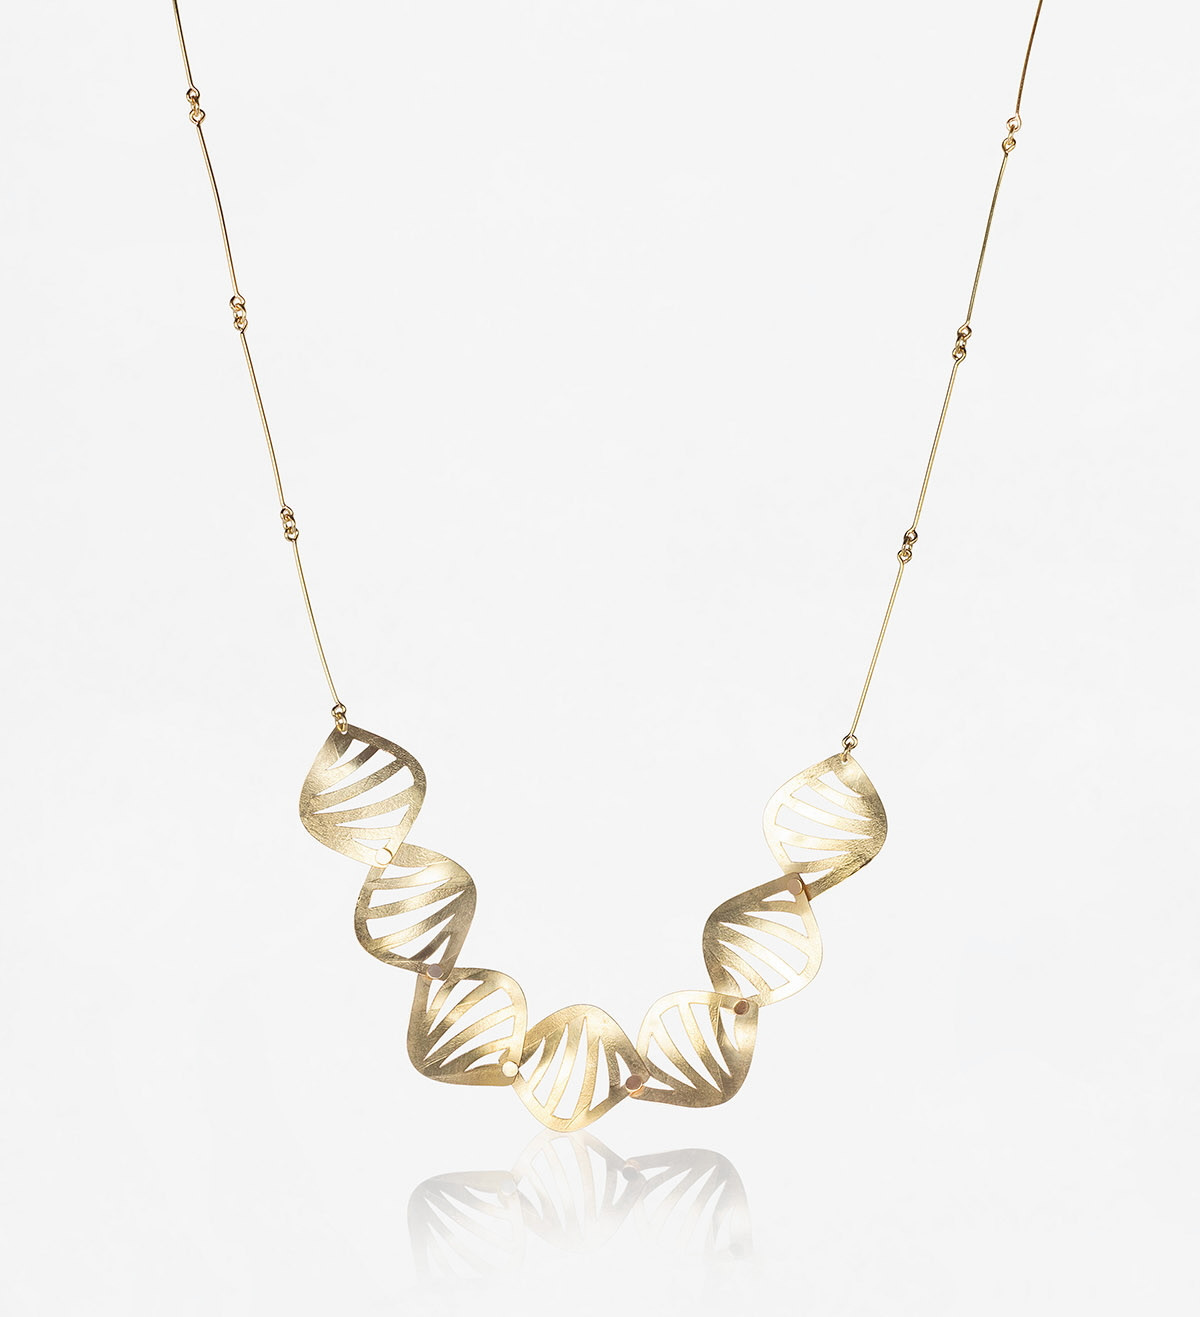 18k gold necklace Jungle 7 pieces 45cm